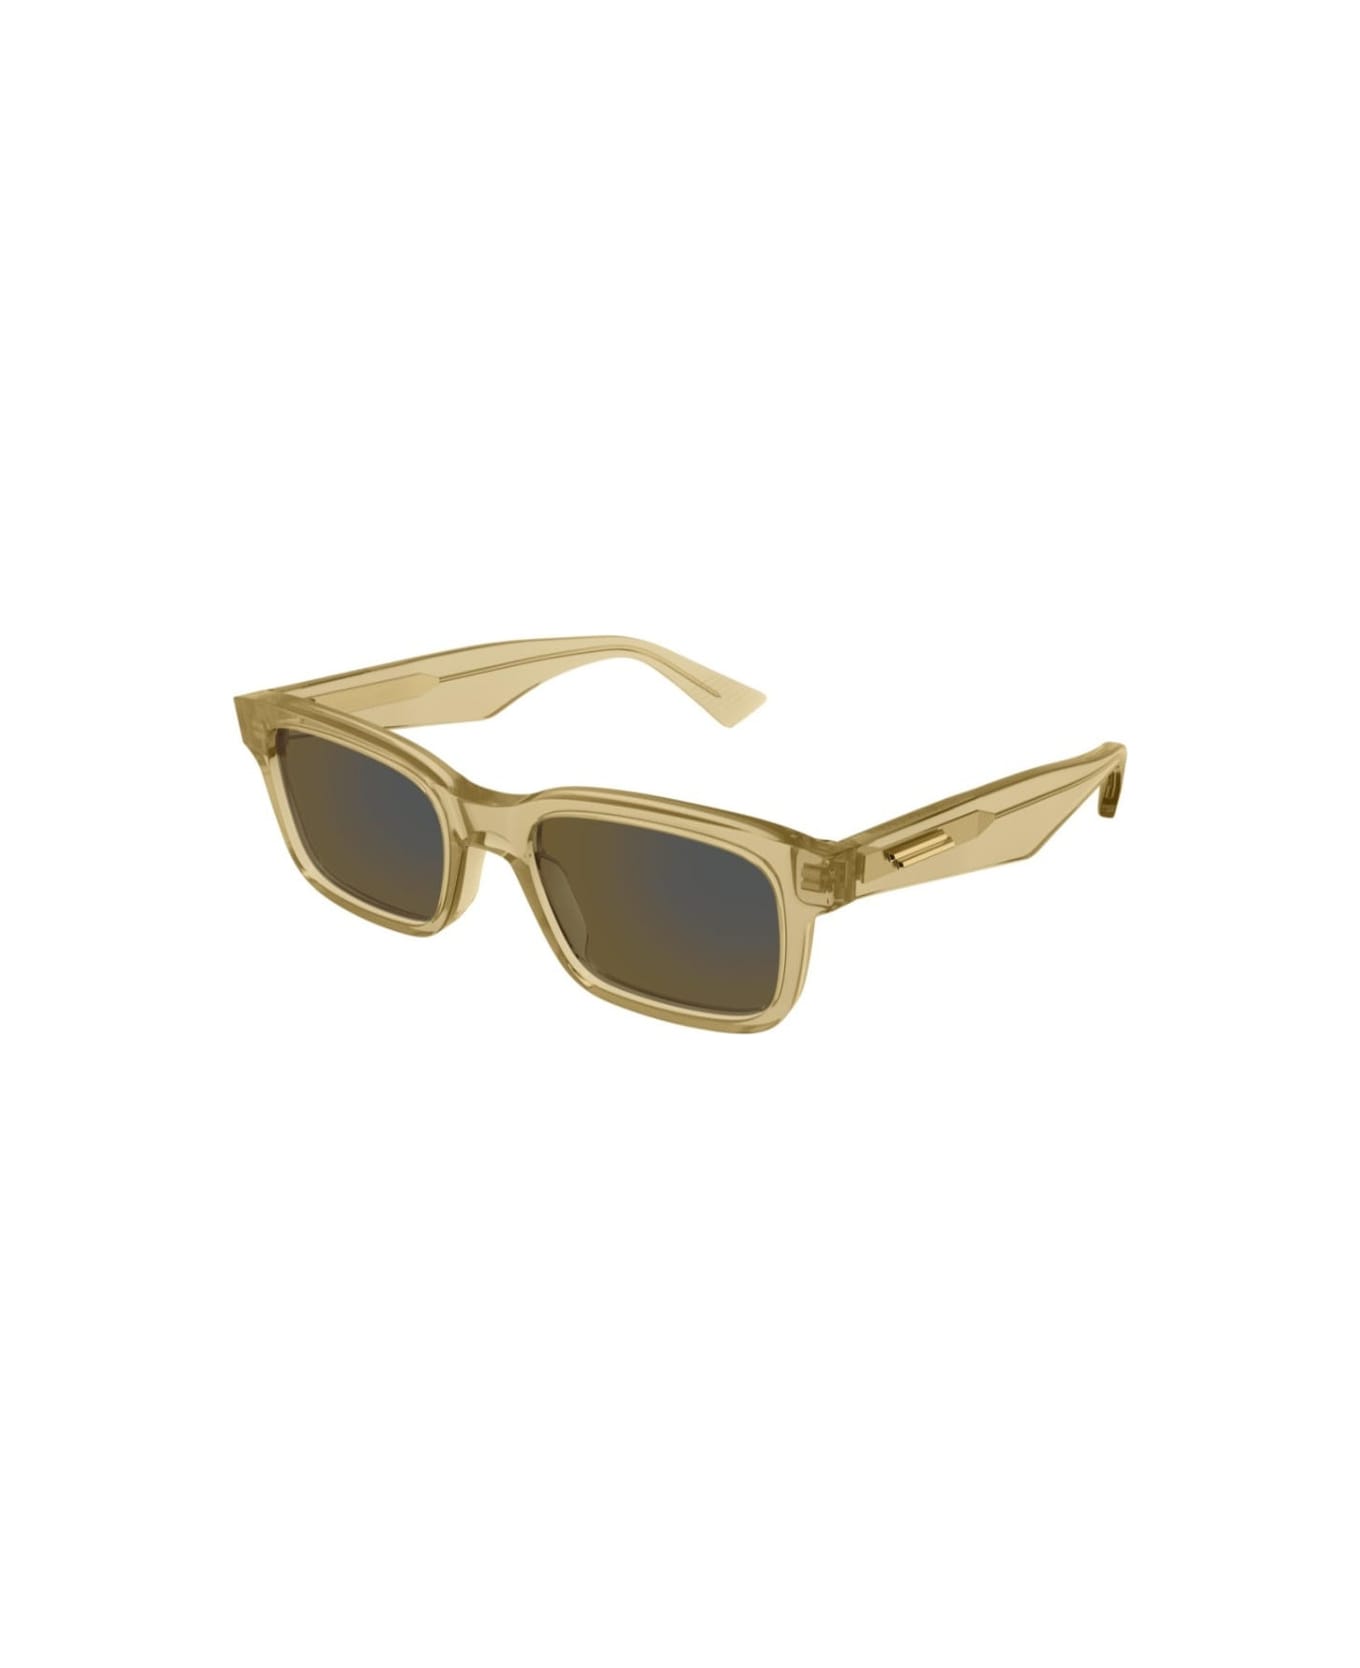 Bottega Veneta Eyewear BV1146s 004 Sunglasses - Miele